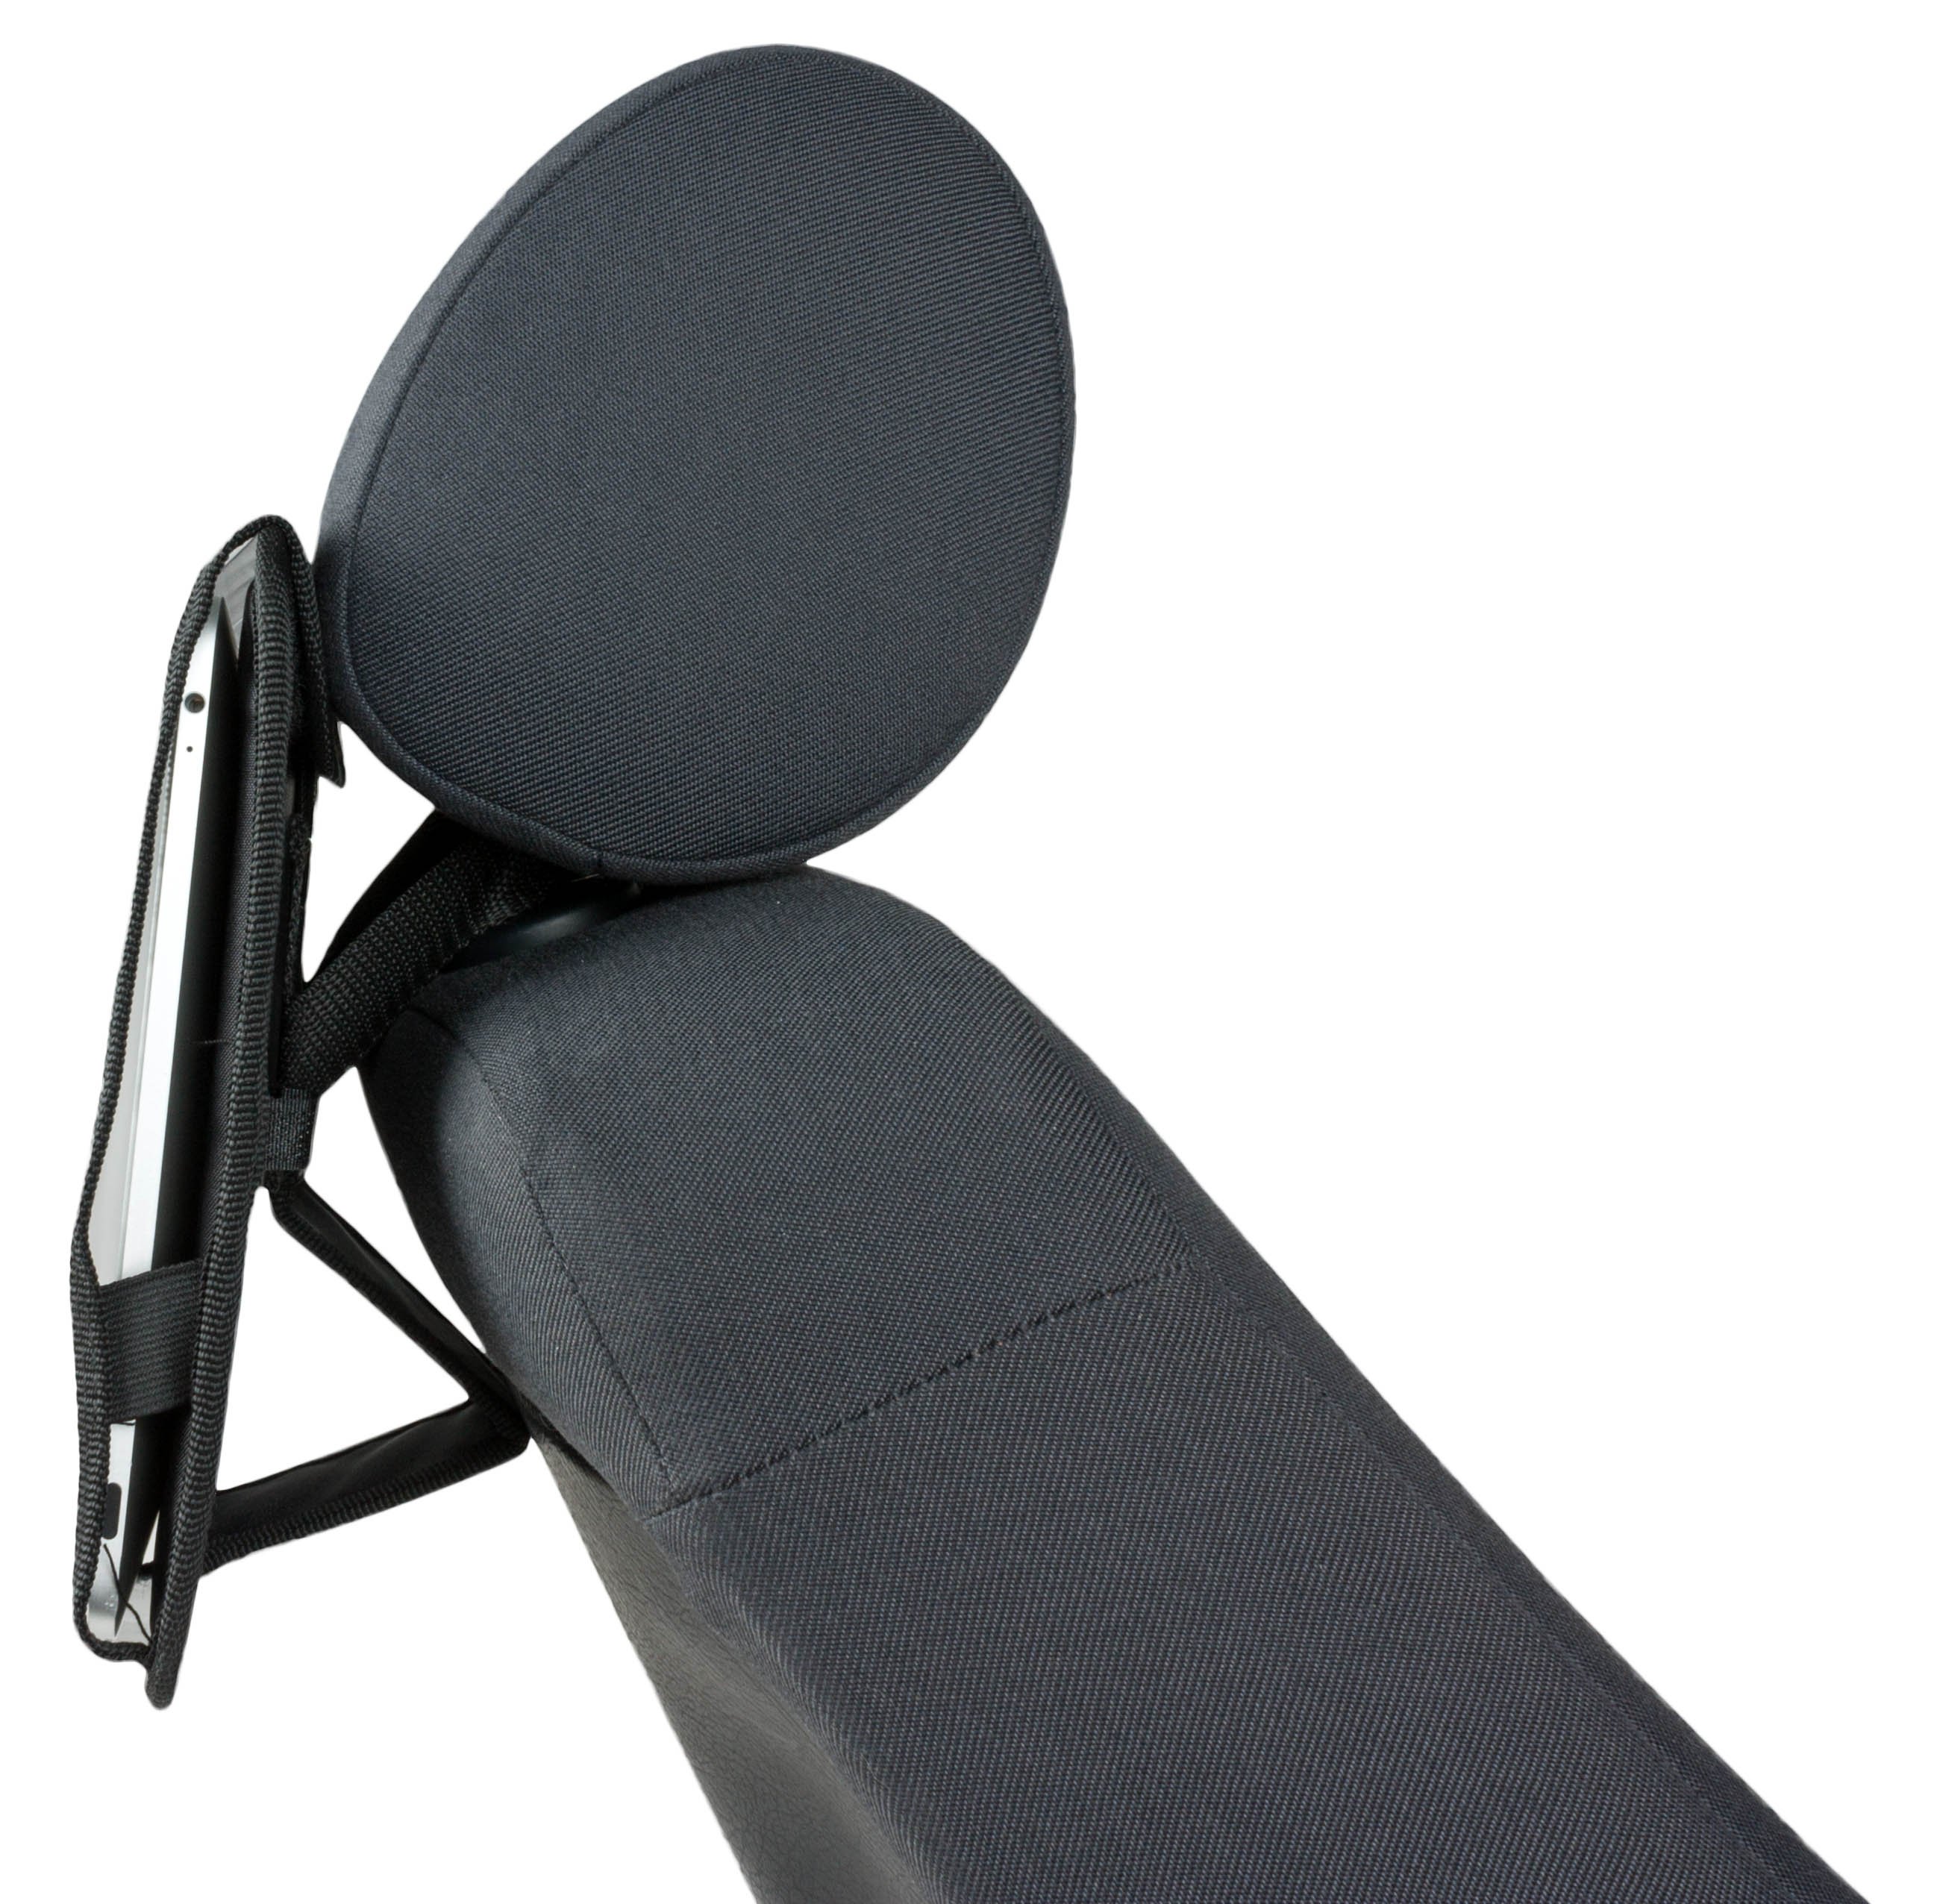 Headrests Tablet holder High Road black